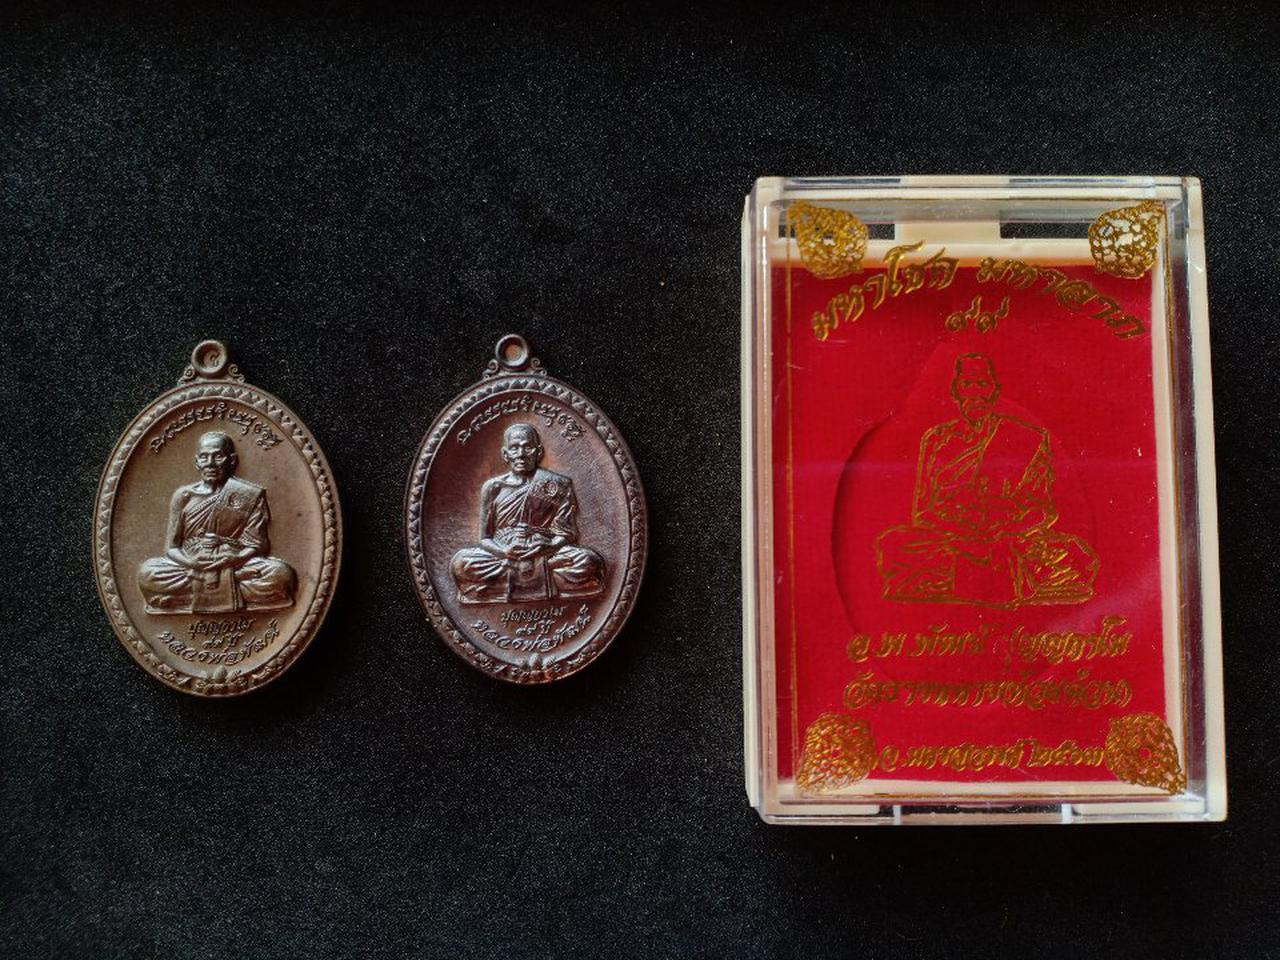 เหรียญ หลวงพ่อพัฒน์ วัดห้วยด้วน นครสวรรค์
รุ่นมหาโชคมหาลาภ(99) ปี 63  